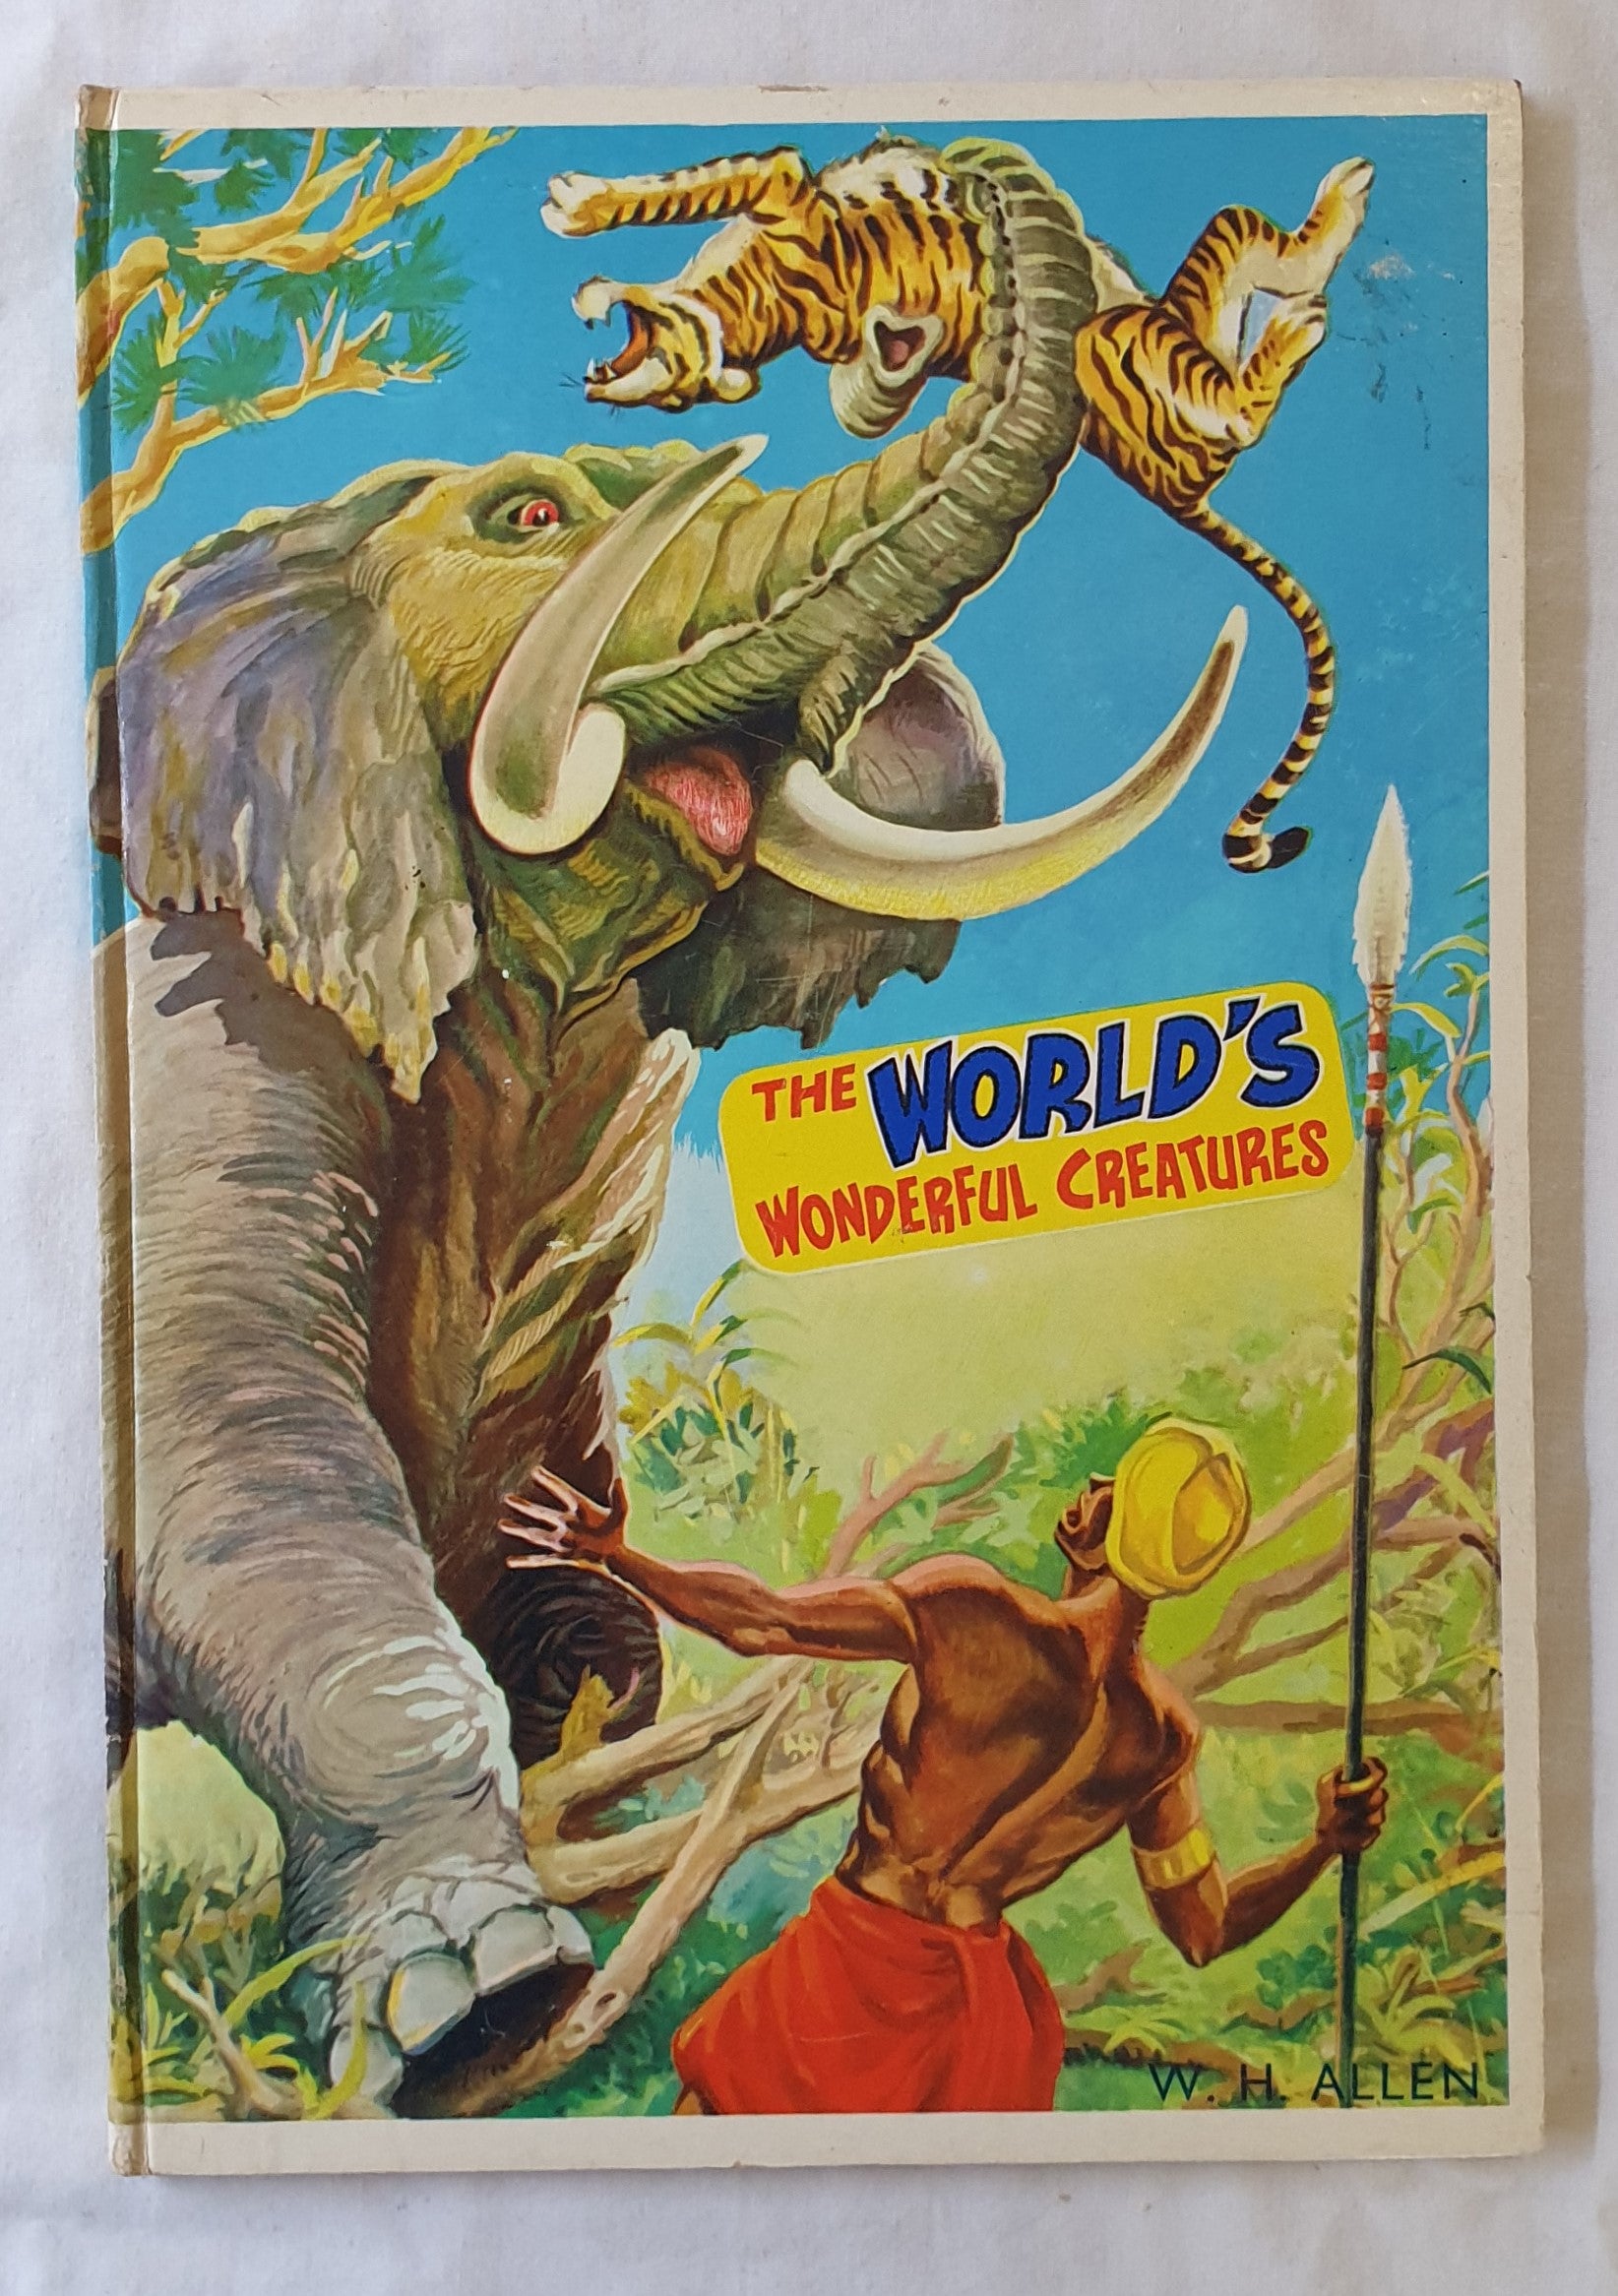 The World’s Wonderful Creatures by W. H. Allen